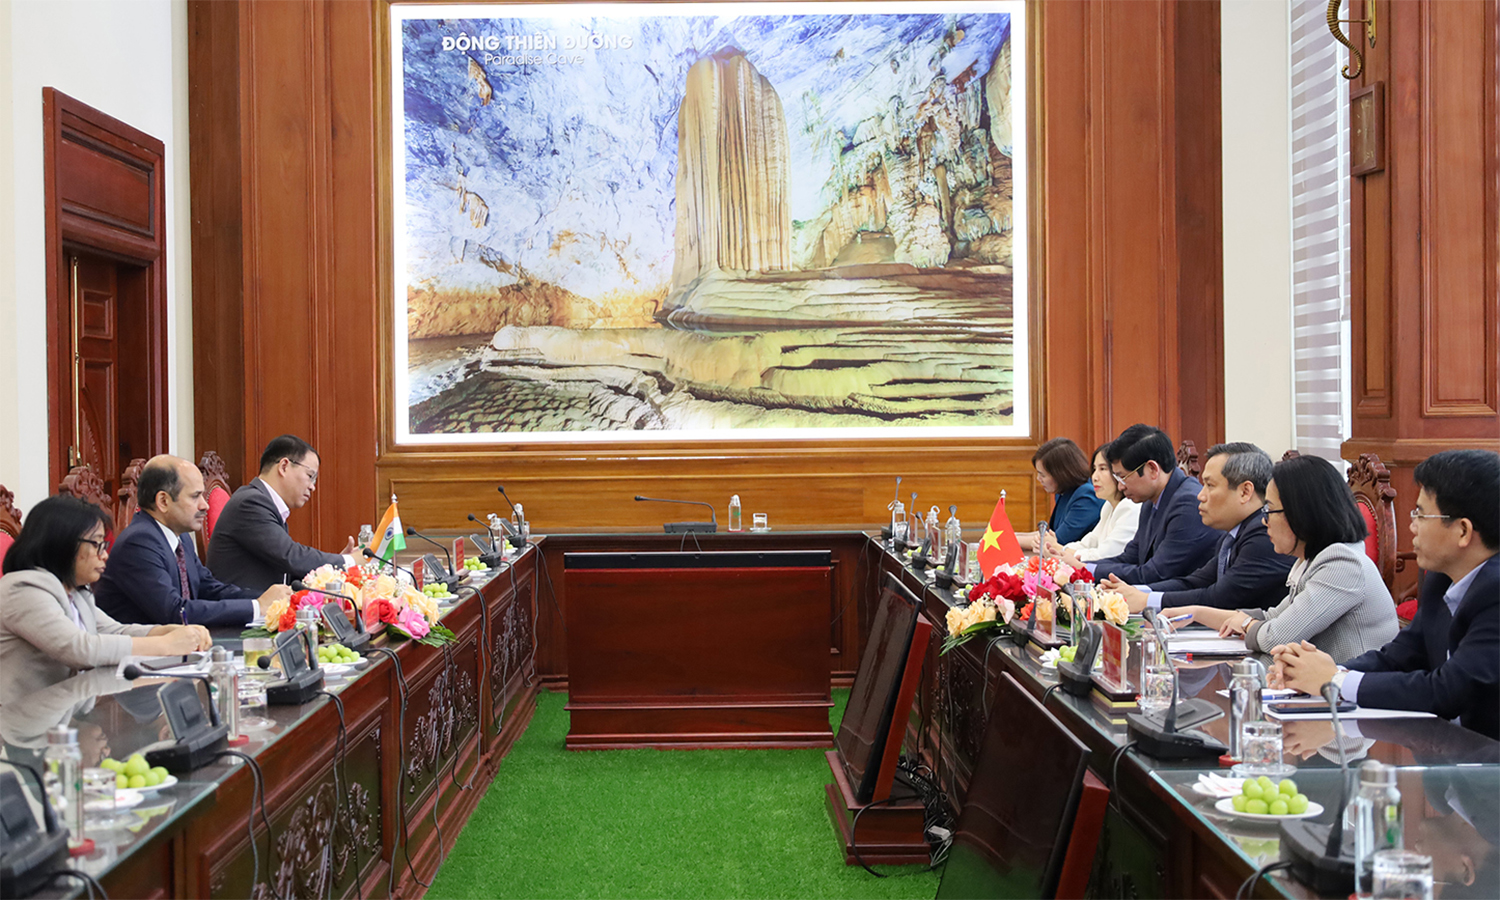 Đồng chí Bí thư Tỉnh ủy tiếp xã giao Đại sứ đặc mệnh toàn quyền Ấn Độ tại Việt Nam